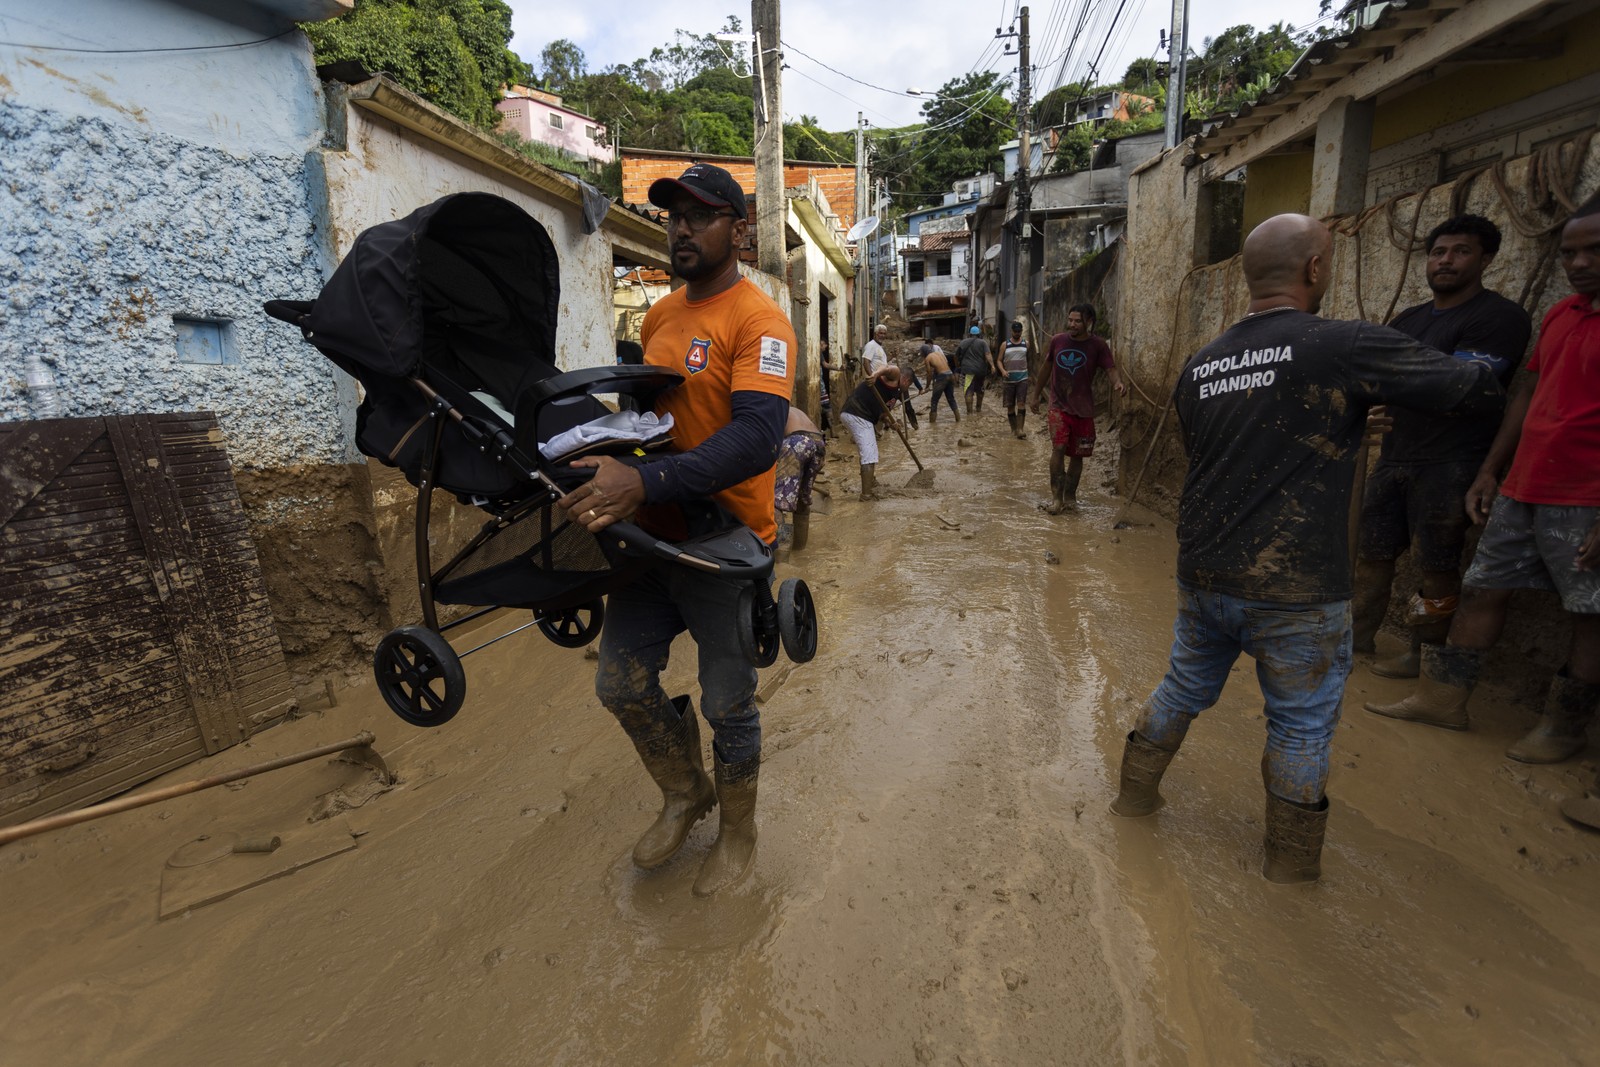 Moradores tentam salvar pertences de suas casas após deslizamento de terra no bairro Itatinga, em São Sebastião — Foto: Maria Isabel Oliveira / Agência O Globo